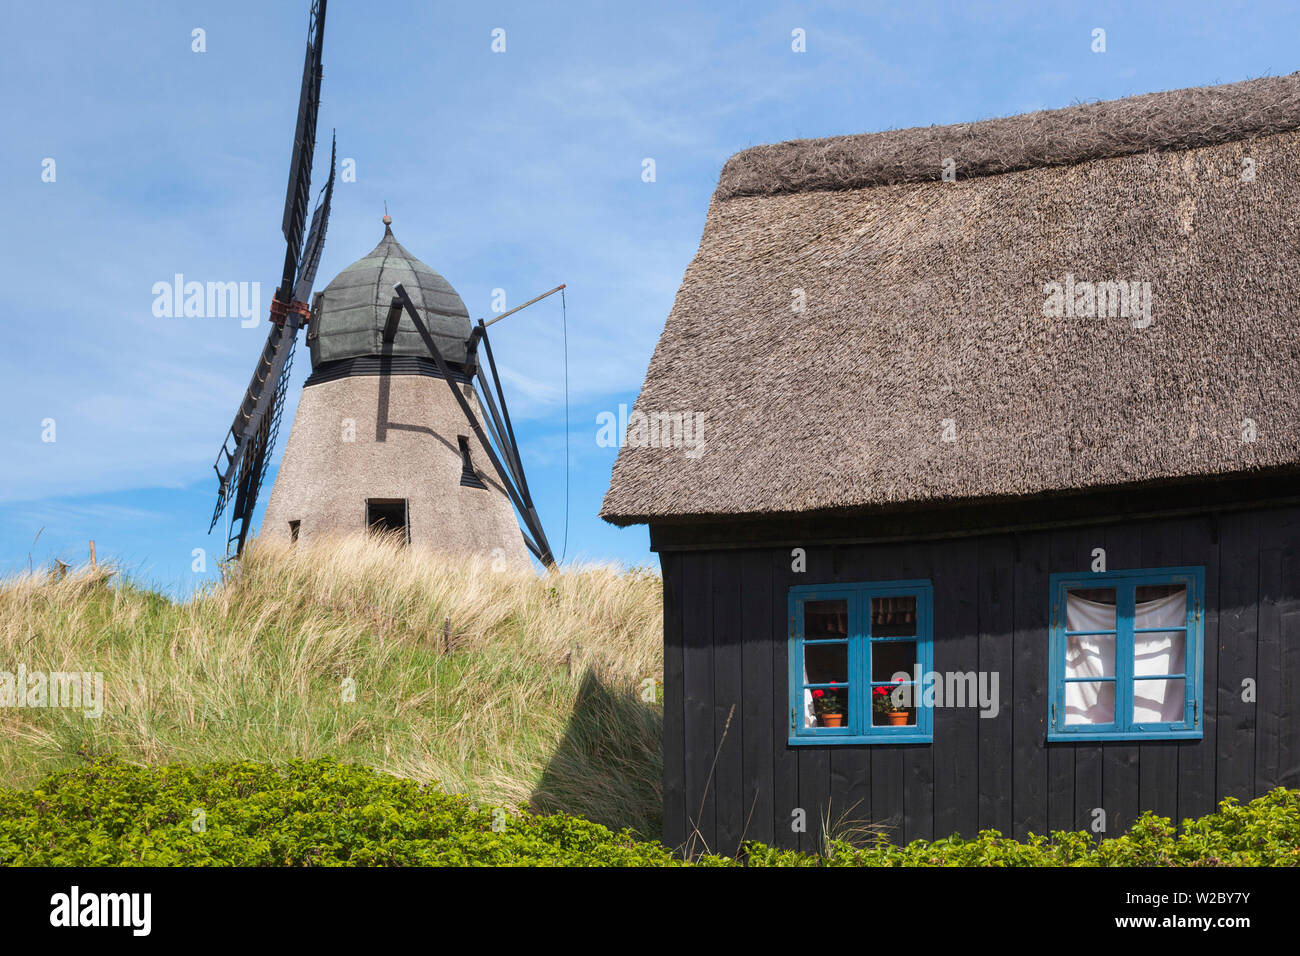 Denmark, Jutland, Skagen, old windmill Stock Photo